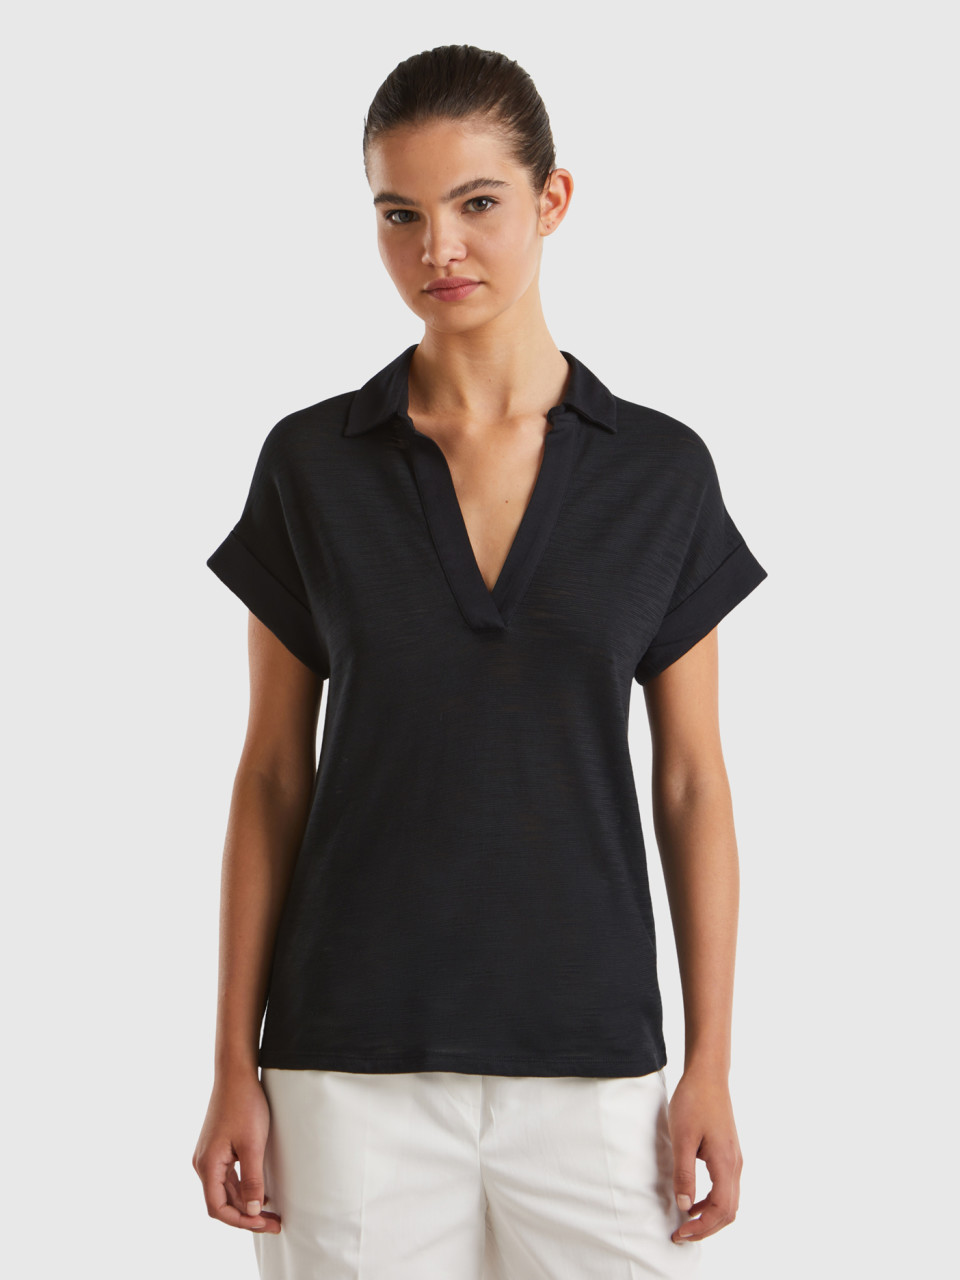 Benetton, Lightweight Polo-style T-shirt, Black, Women